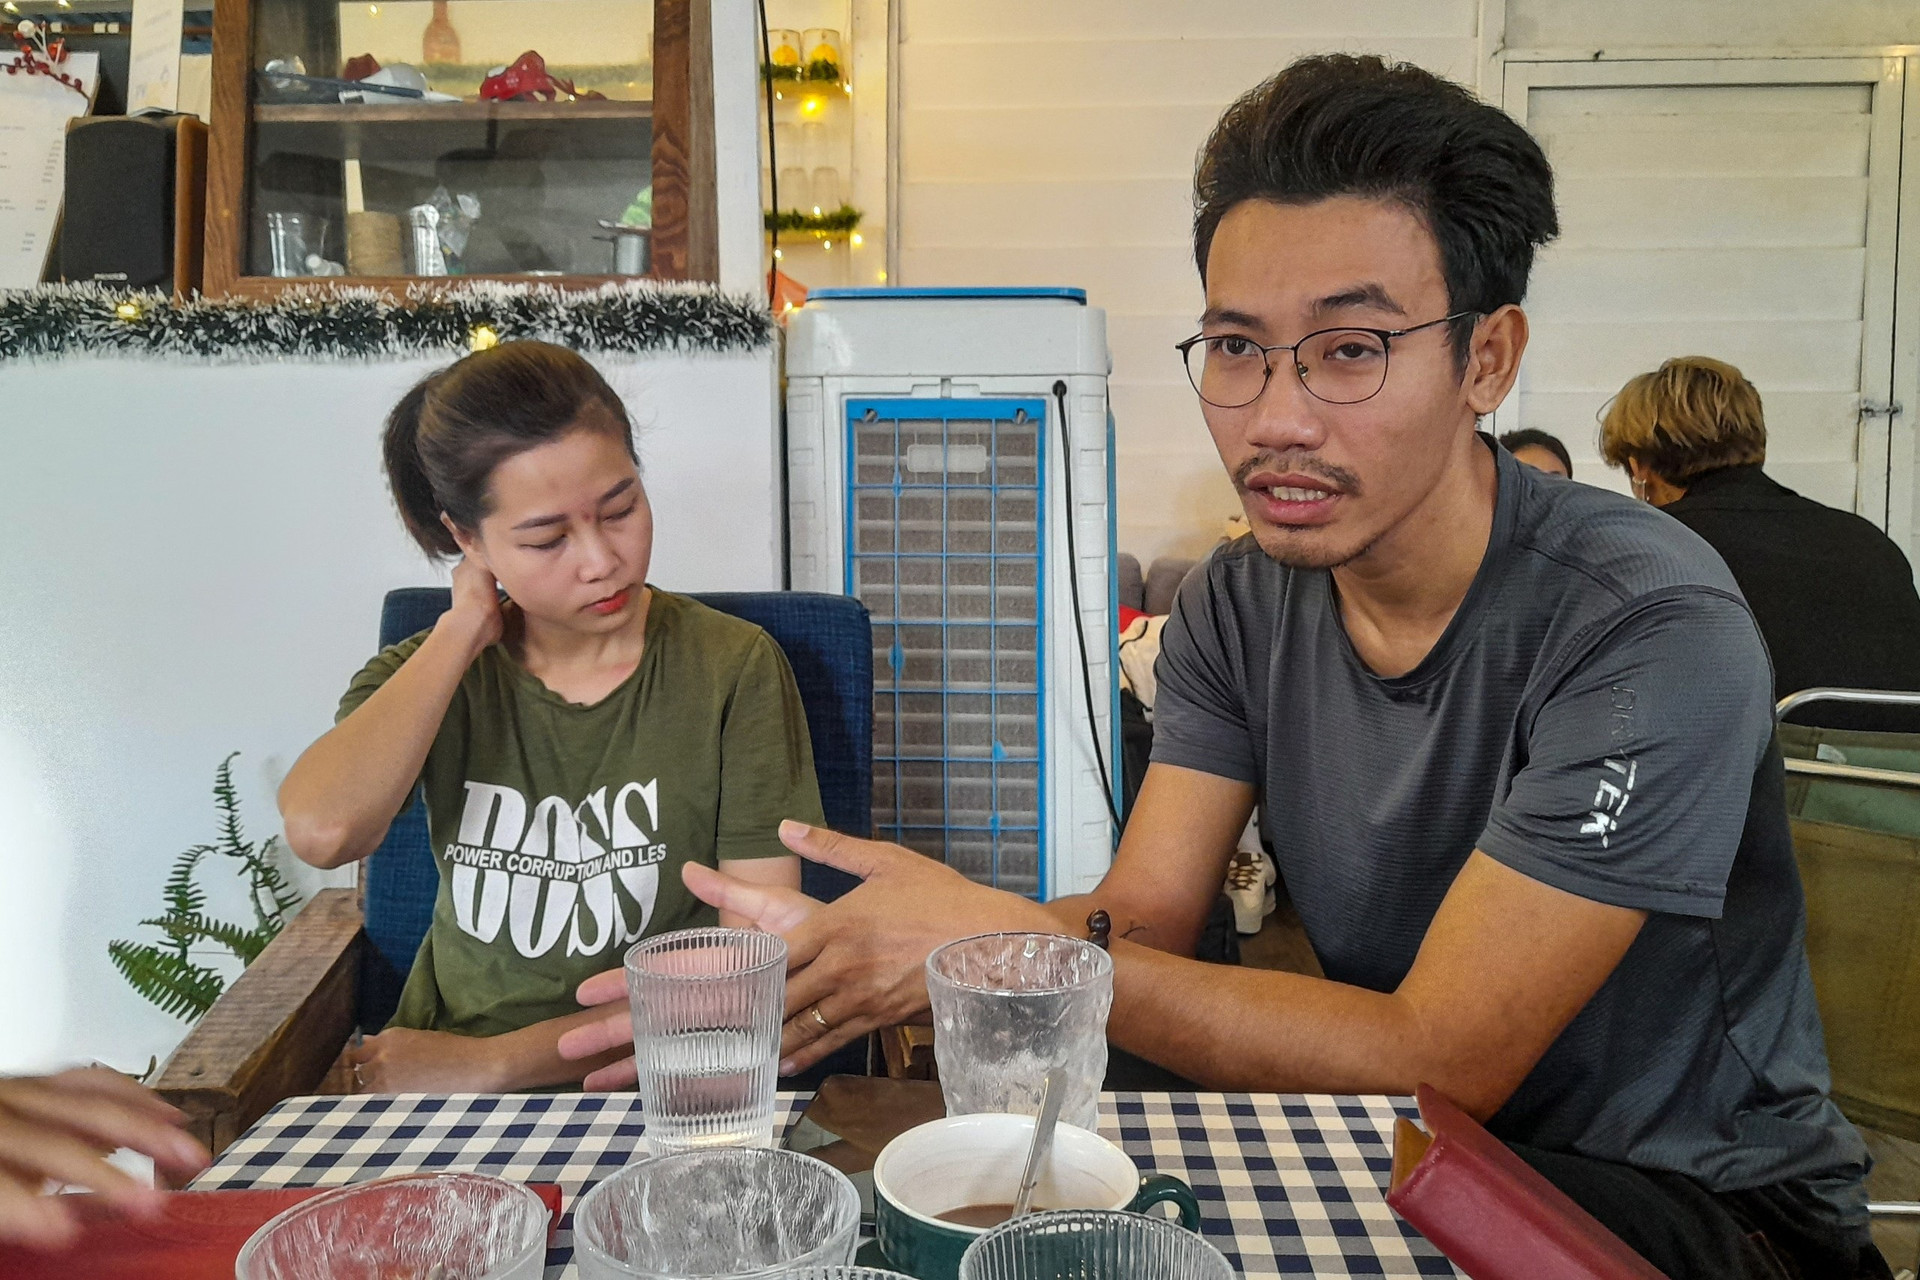 Quán cà phê ở Đà Nẵng gây tranh cãi khi nói không với trẻ dưới 12 tuổi - 3